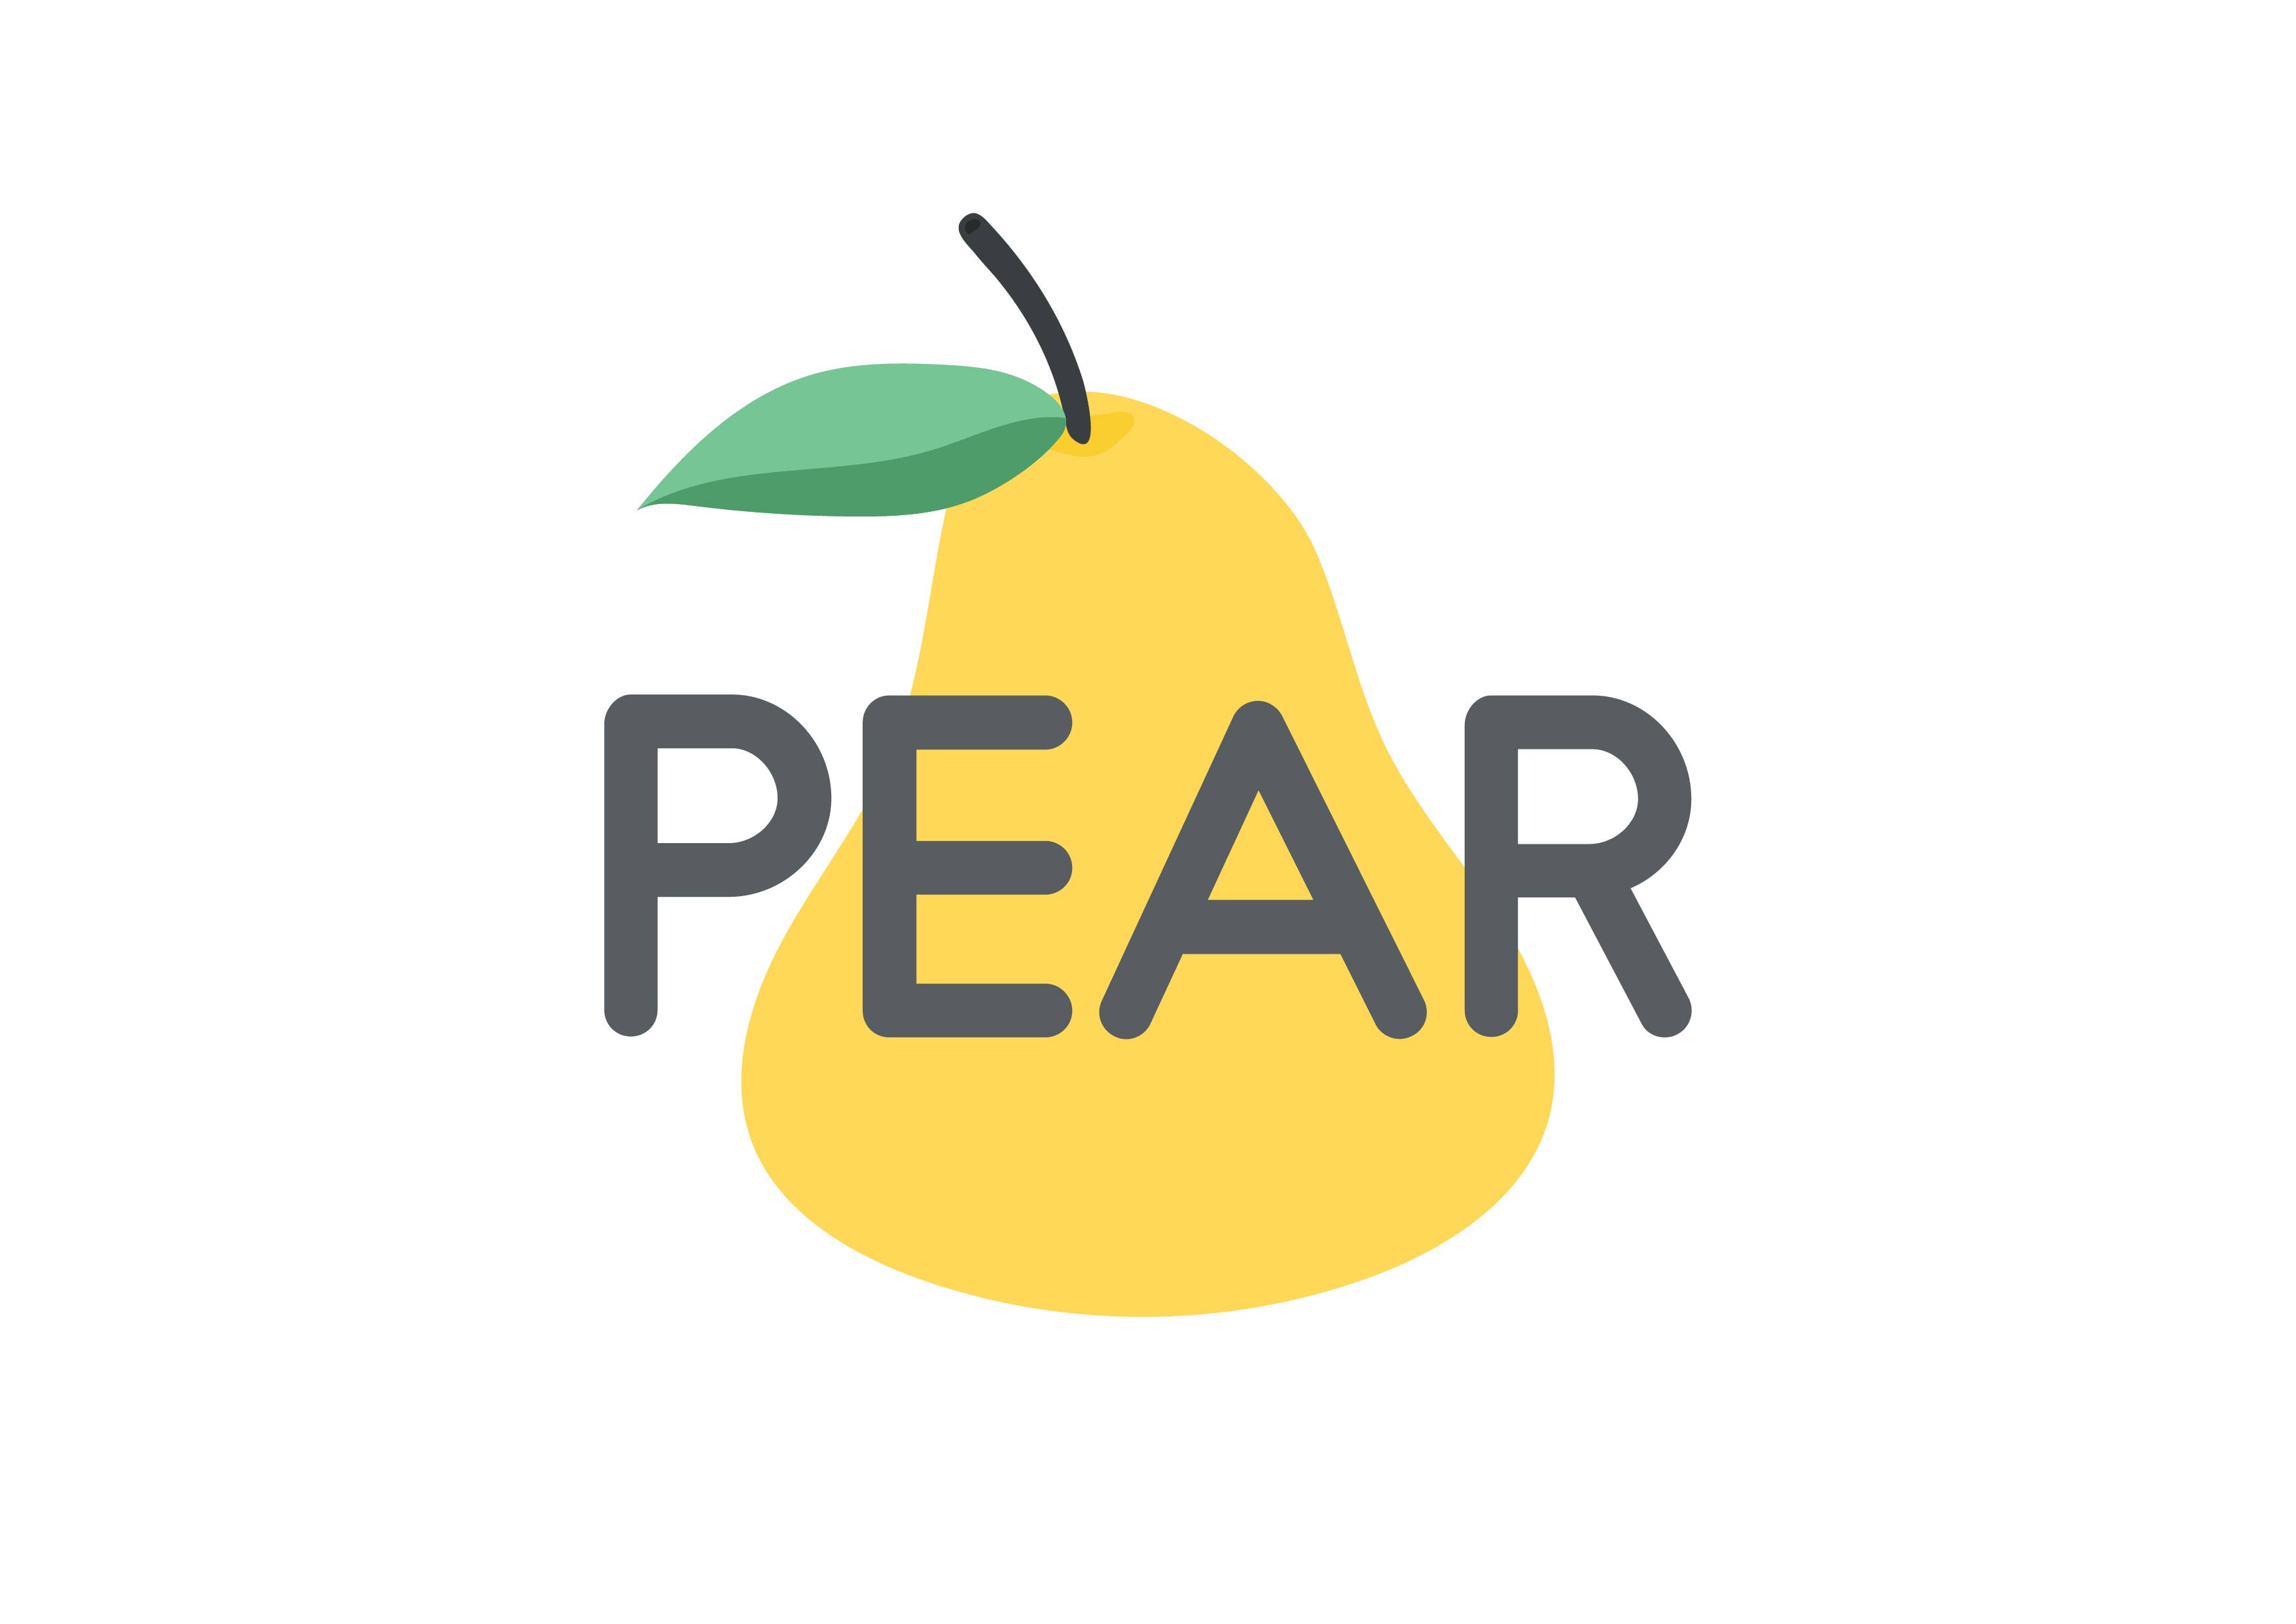 Pear - Icarly - Sticker | TeePublic